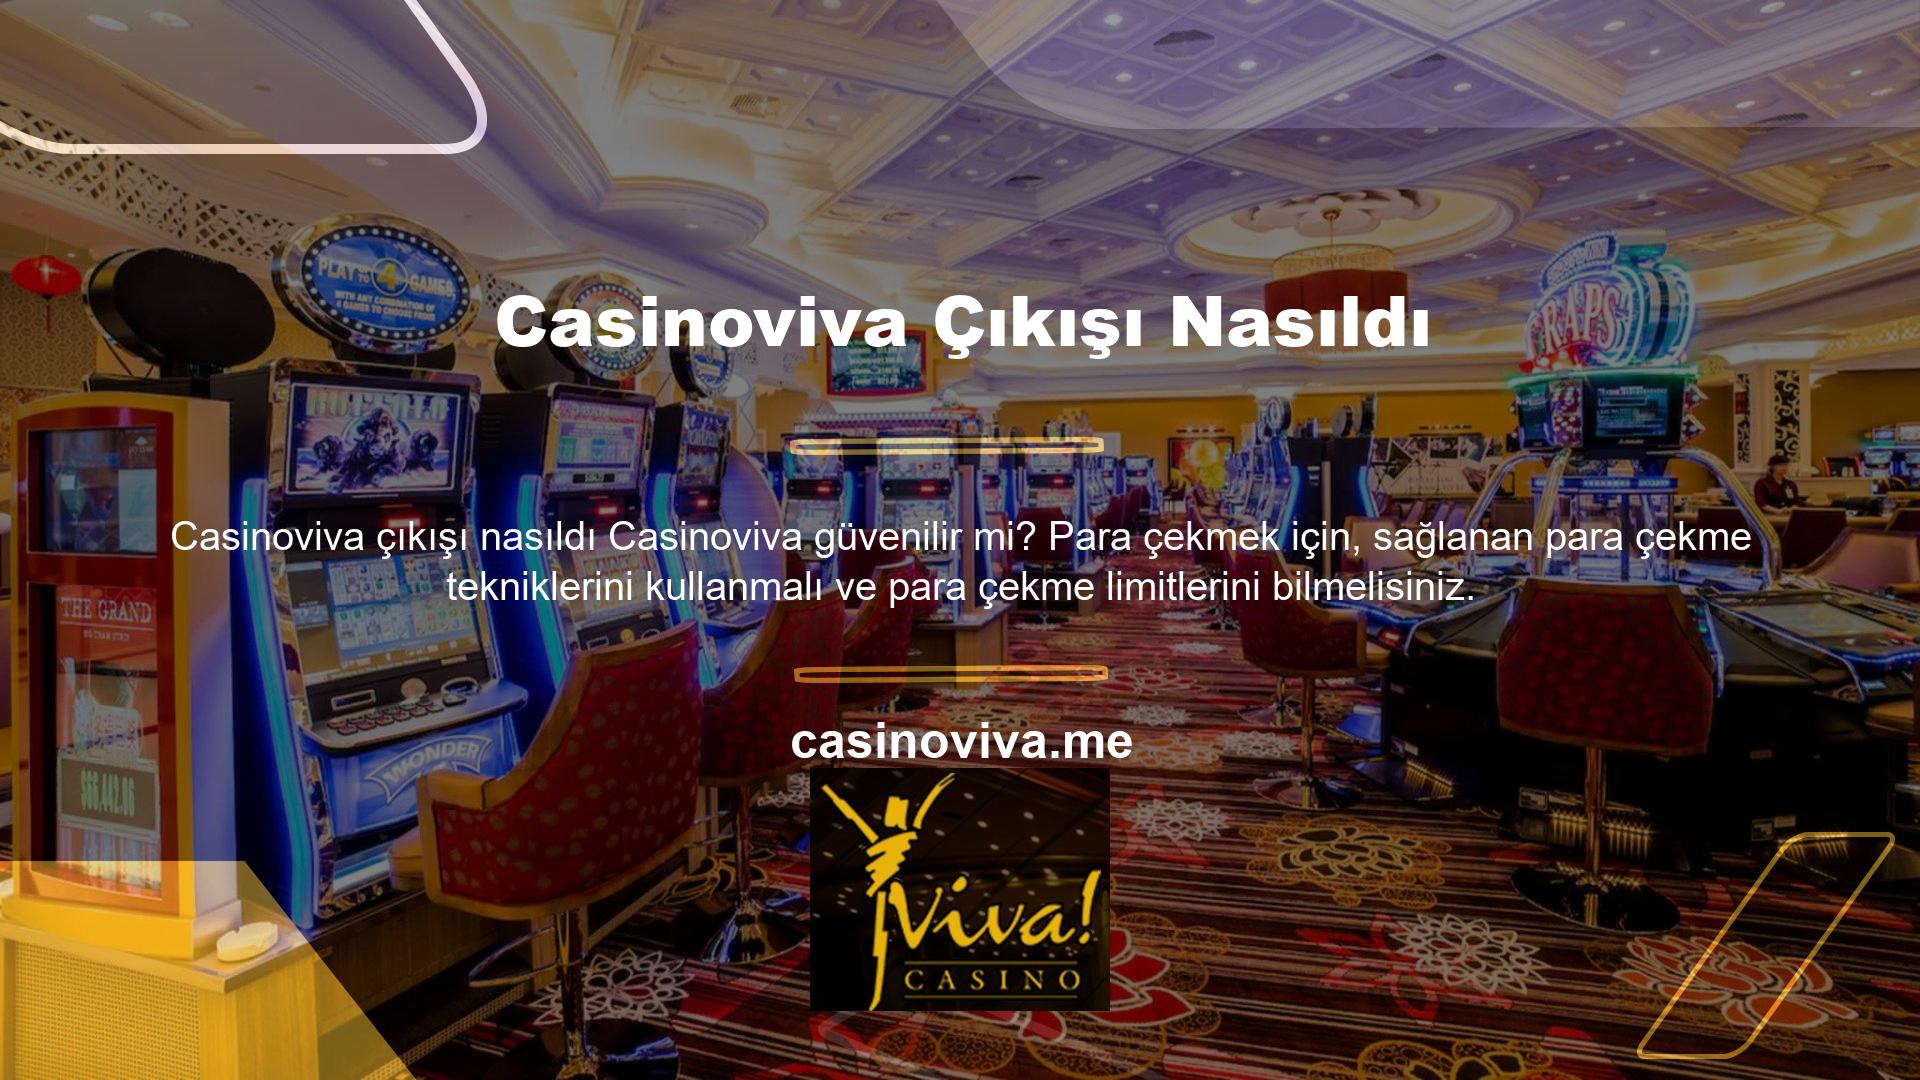 Casinoviva sitesi her zaman kaliteli hizmet ve sorunsuz para çekme işlemi sağlayan sitelerden biridir